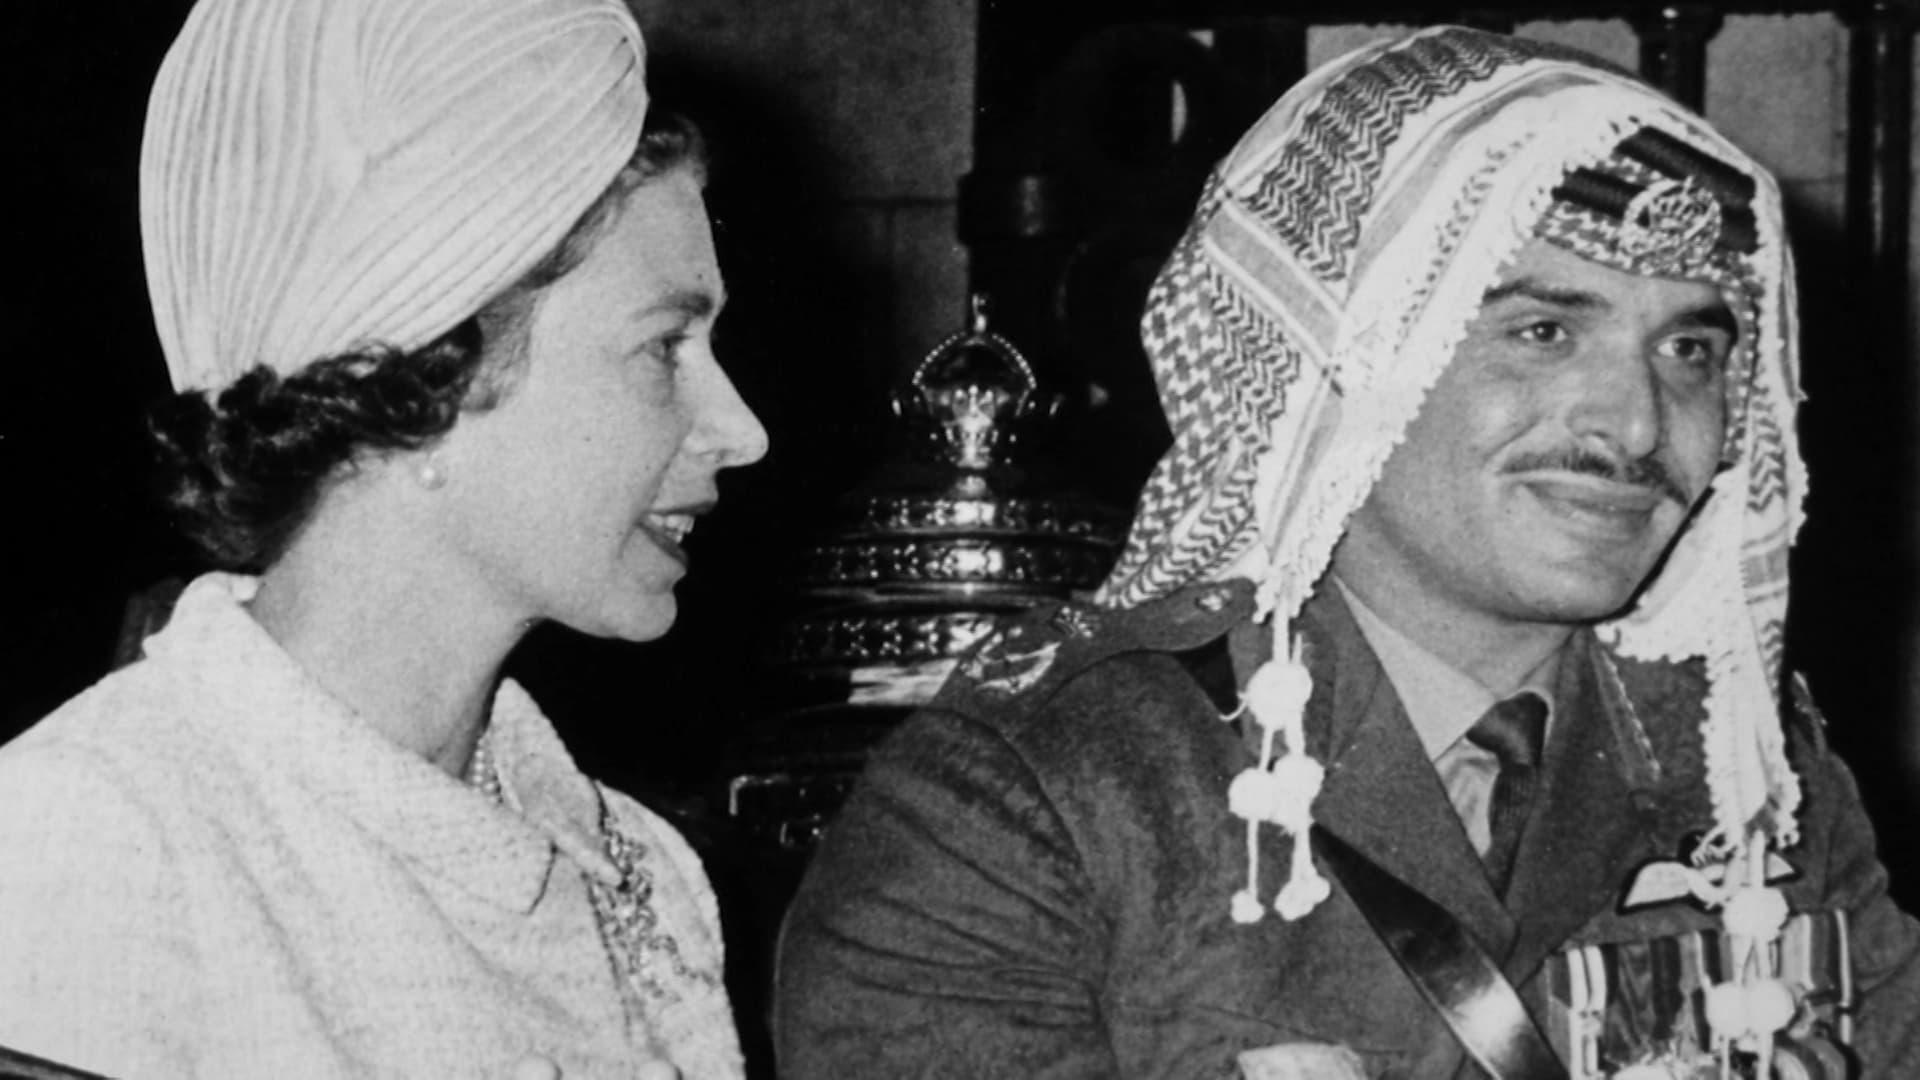 ما أهمية العائلة الملكية البريطانية للعائلة الملكية الهاشمية؟ الملكة رانيا توضح لـCNN العلاقة